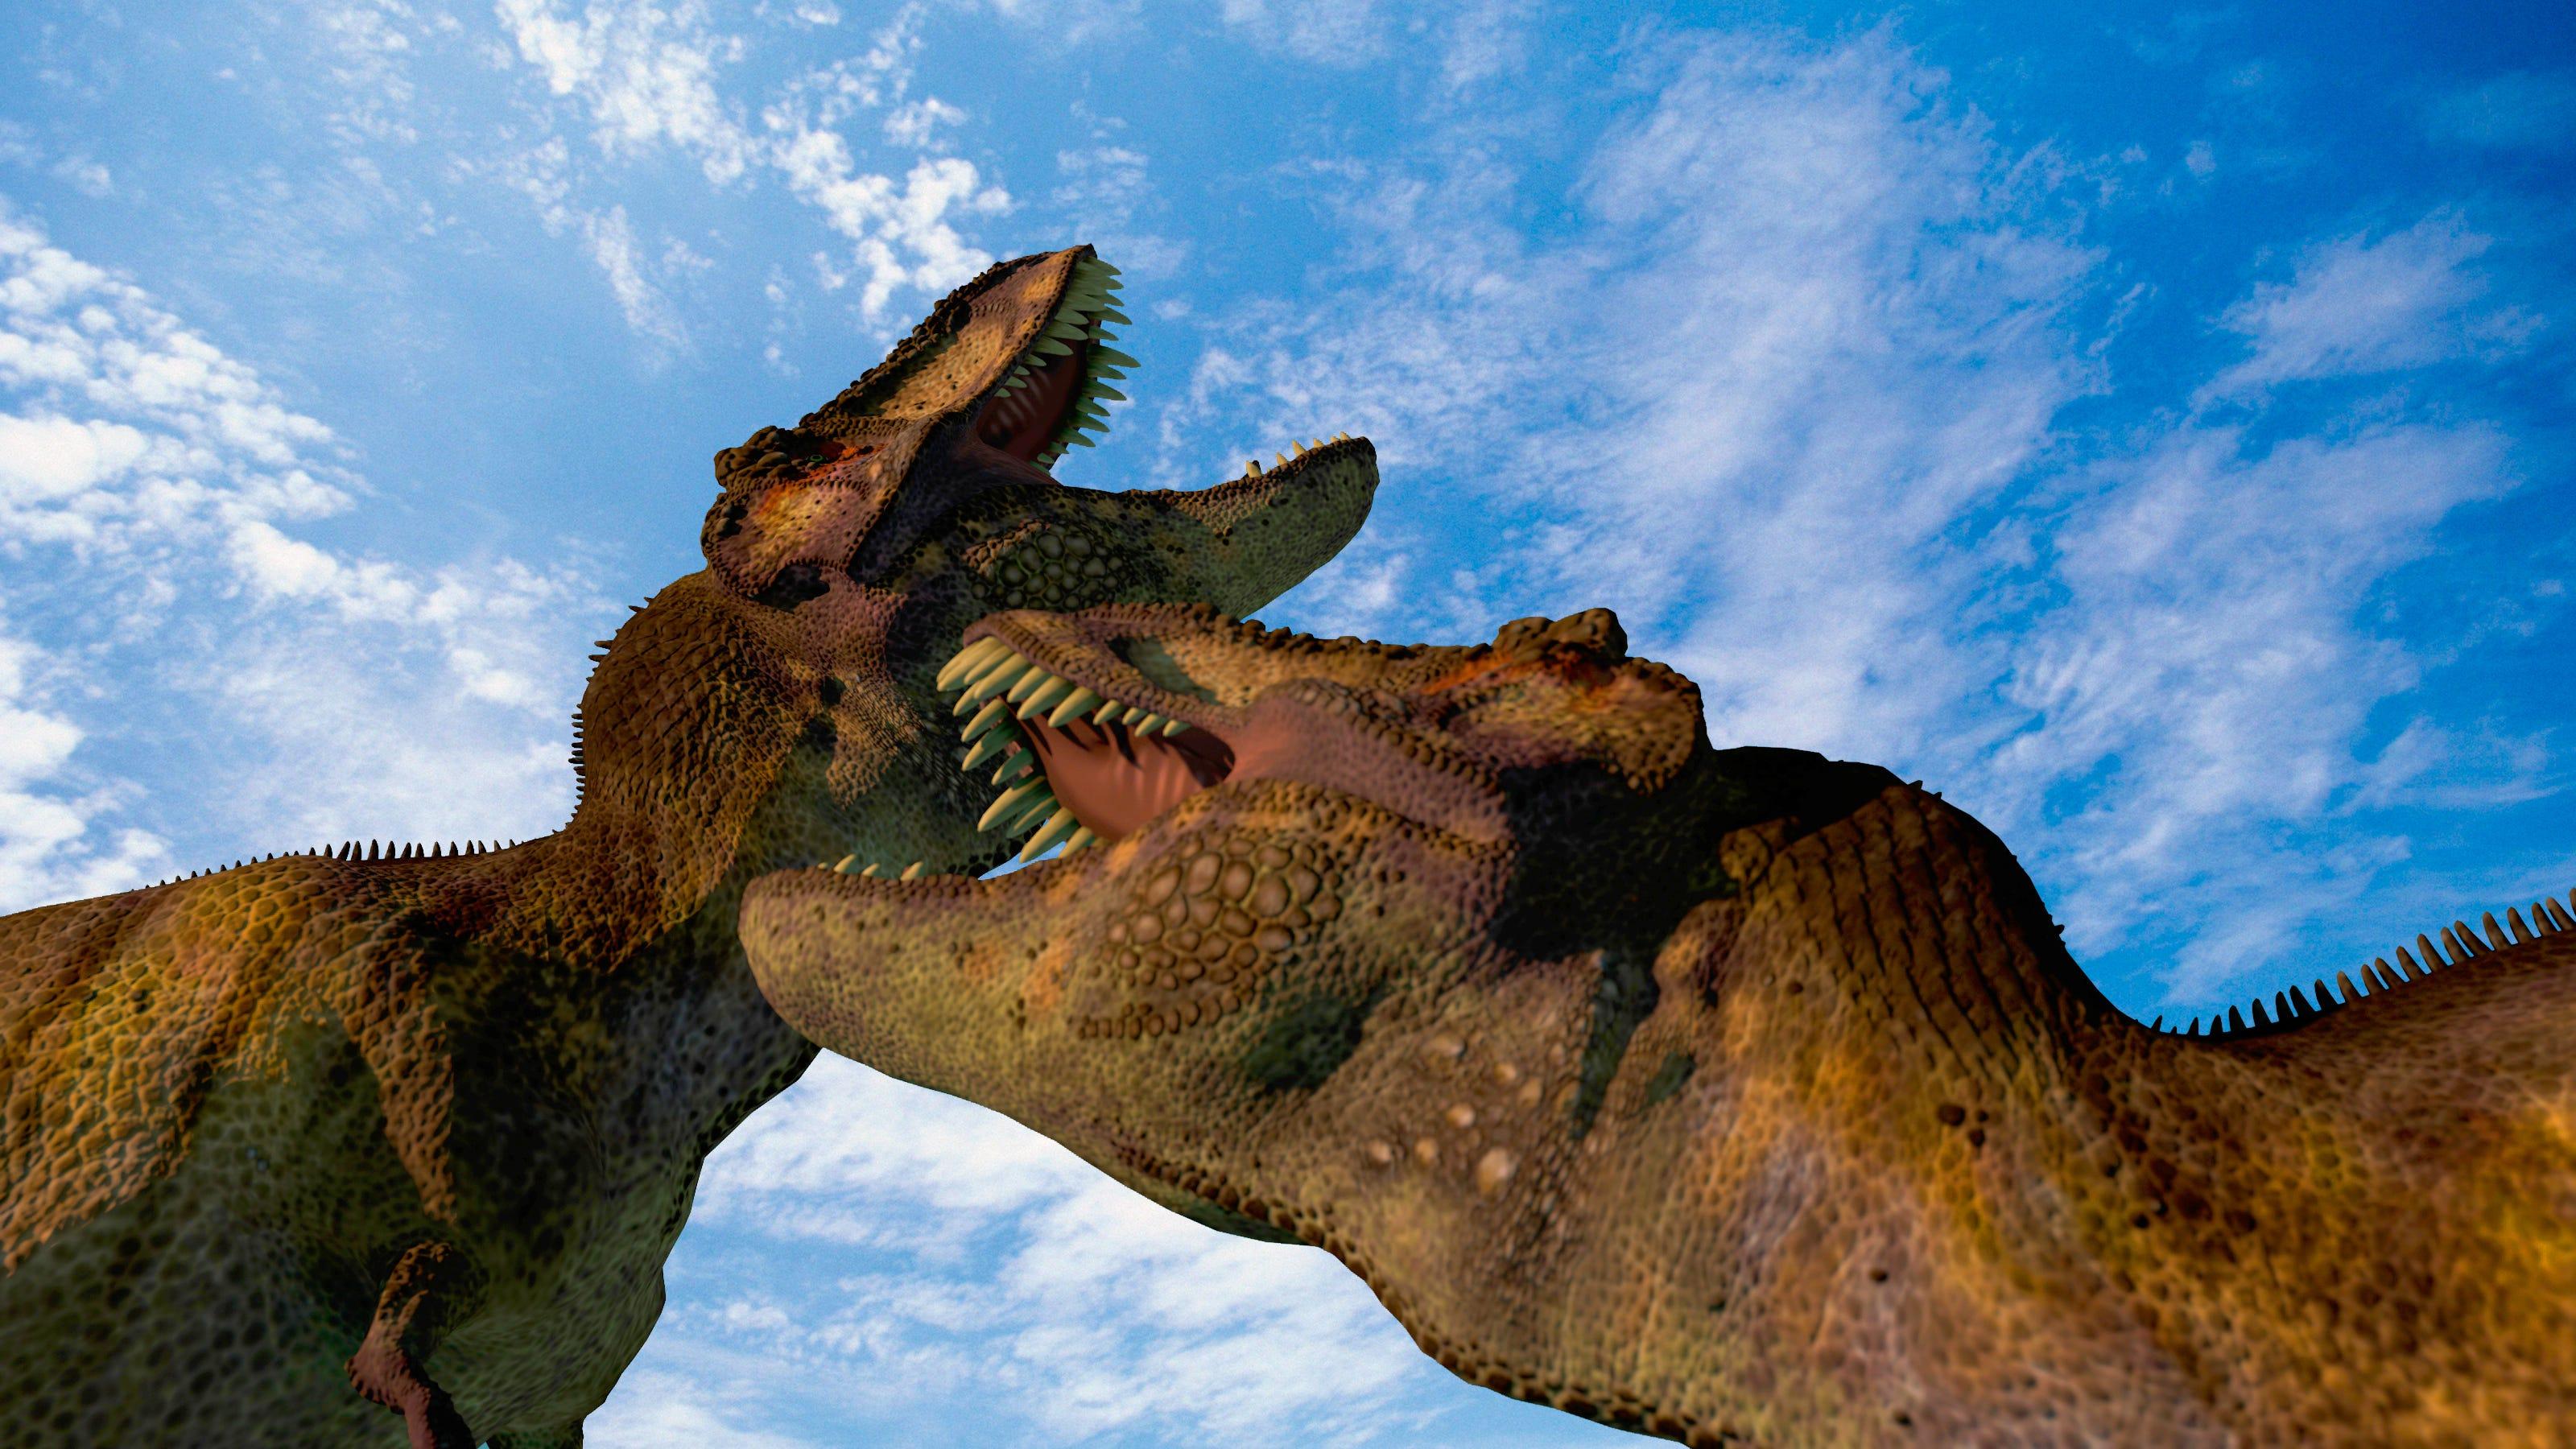 ティラノサウルス属の新種を発見…これまでの定説よりも早く大型化していた